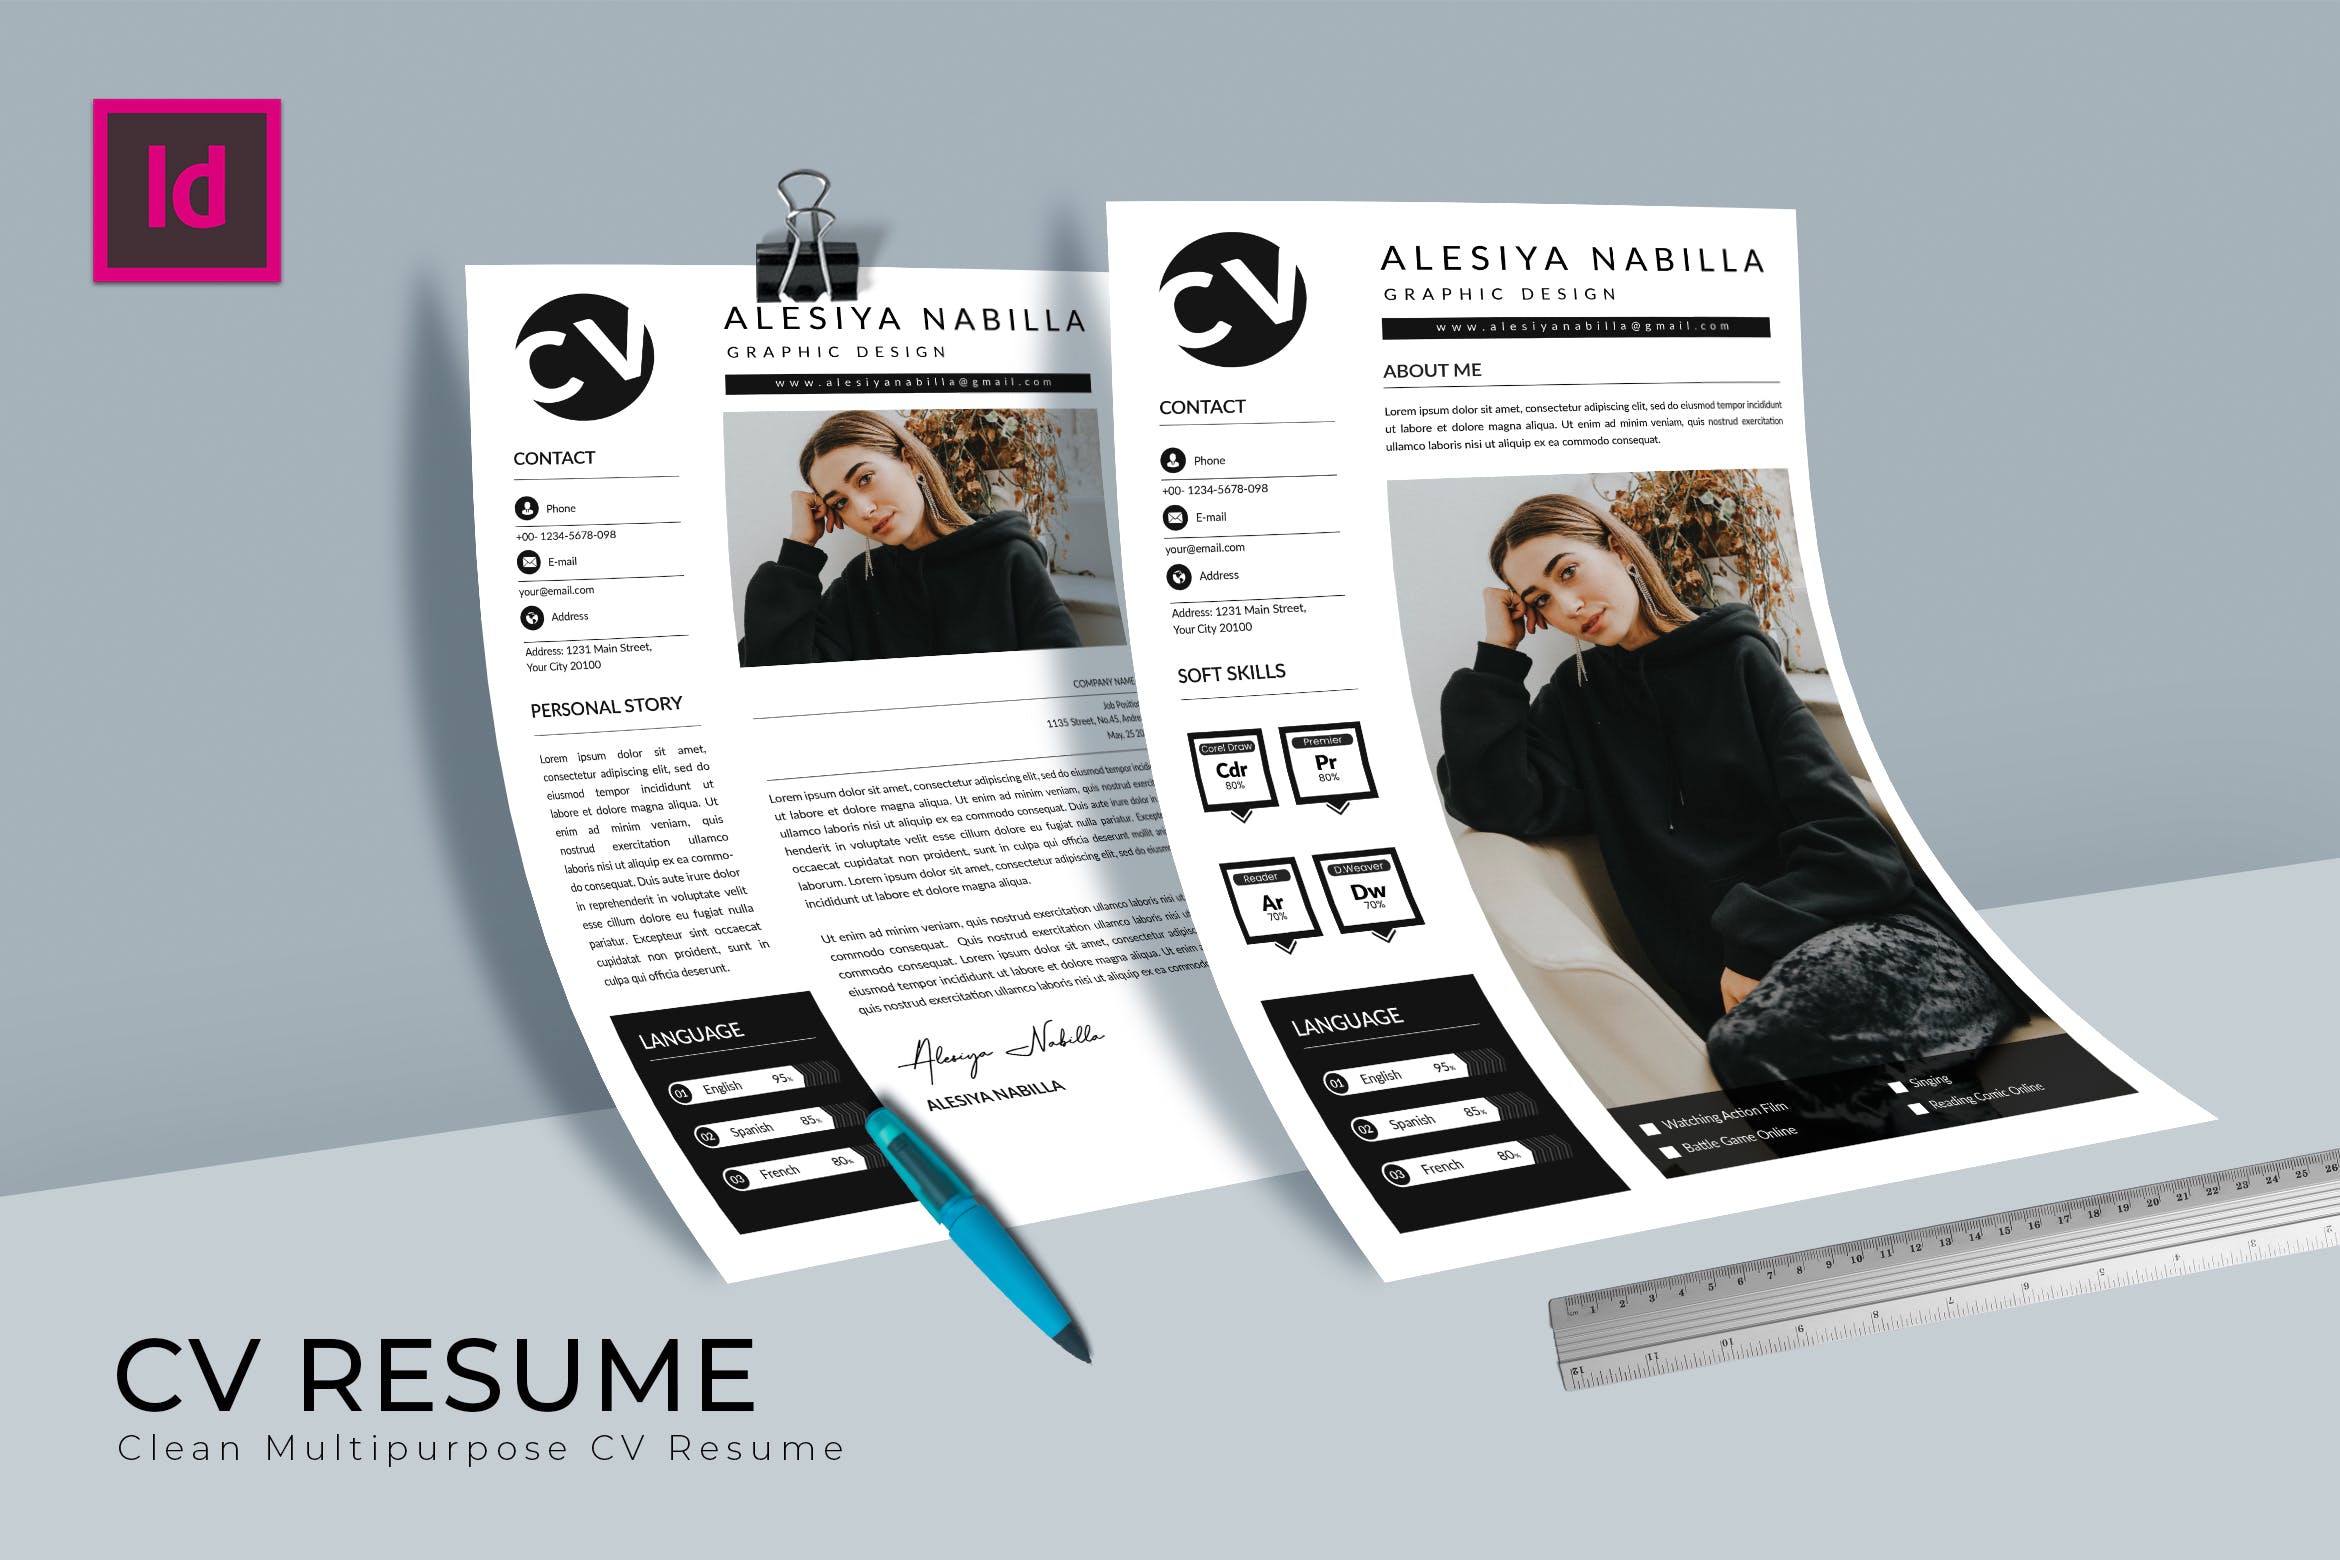 图形设计师介绍信&第一素材精选简历模板 Beautiful CV Resume Design插图